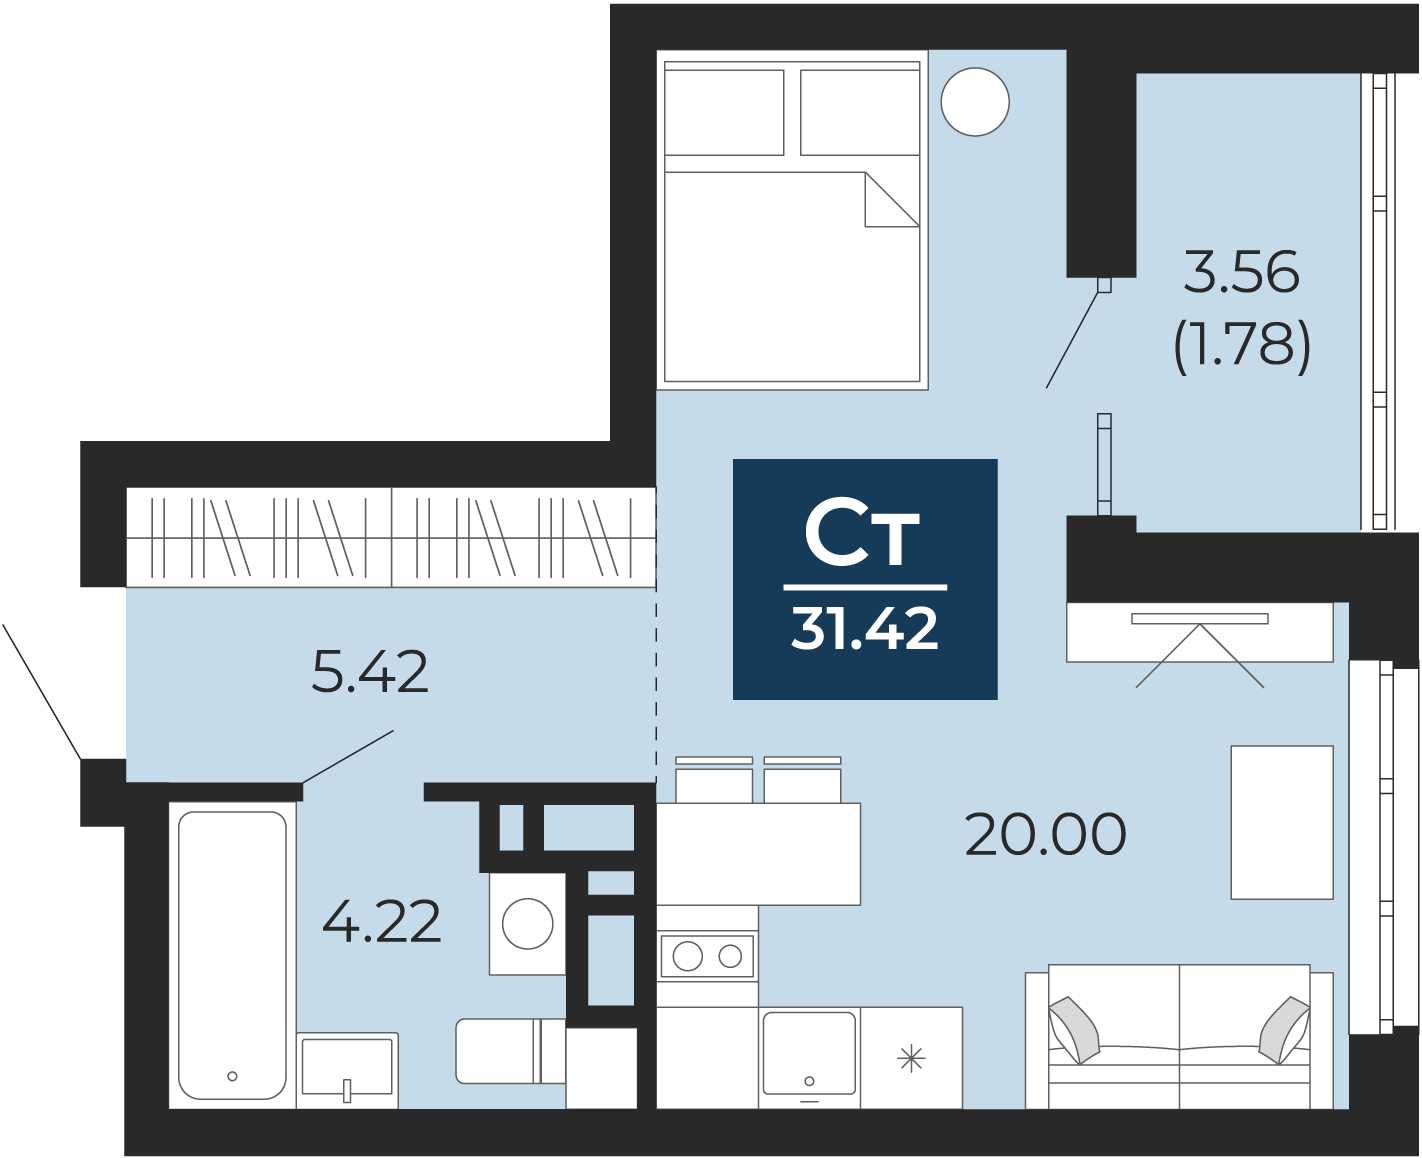 Квартира № 298, Студия, 31.42 кв. м, 6 этаж